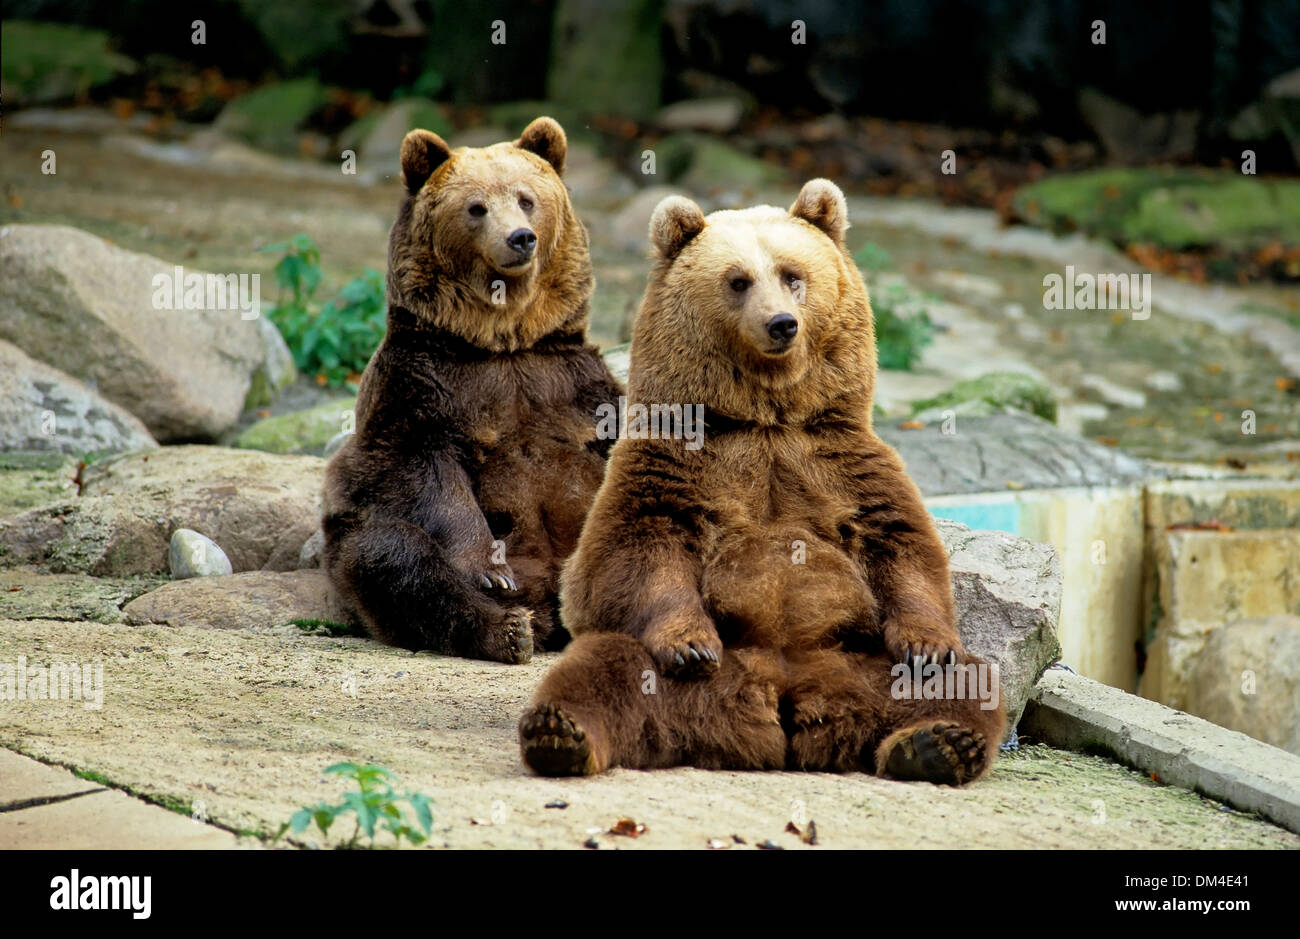 Zoo: Braunbären im Gehege, Braunbär (Ursus arctos) Stock Photo